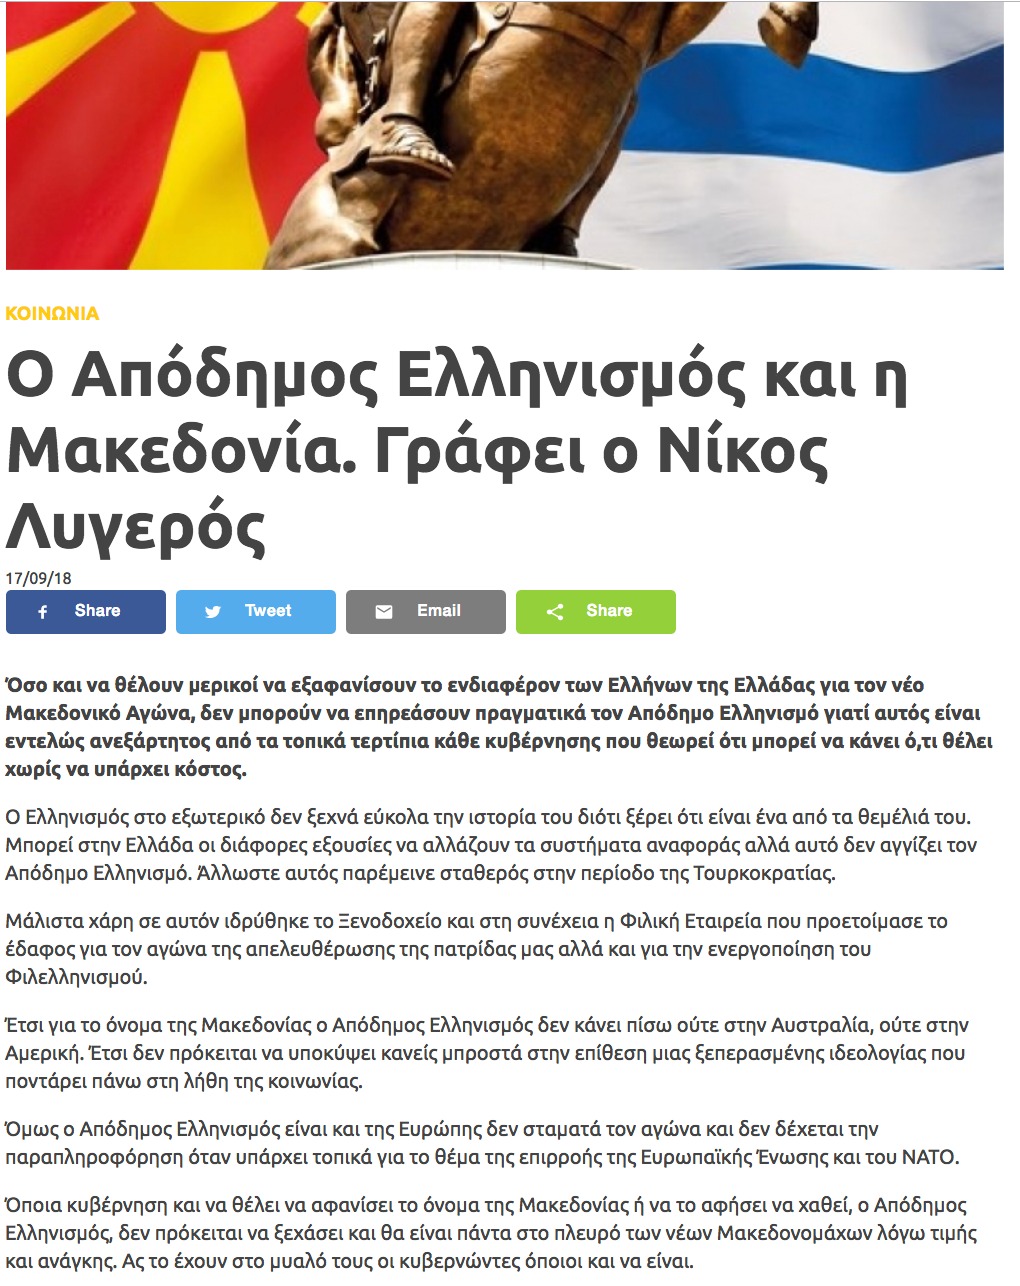 Ο Απόδημος Ελληνισμός και η Μακεδονία, arcadianews, 17/09/2018 - Publication